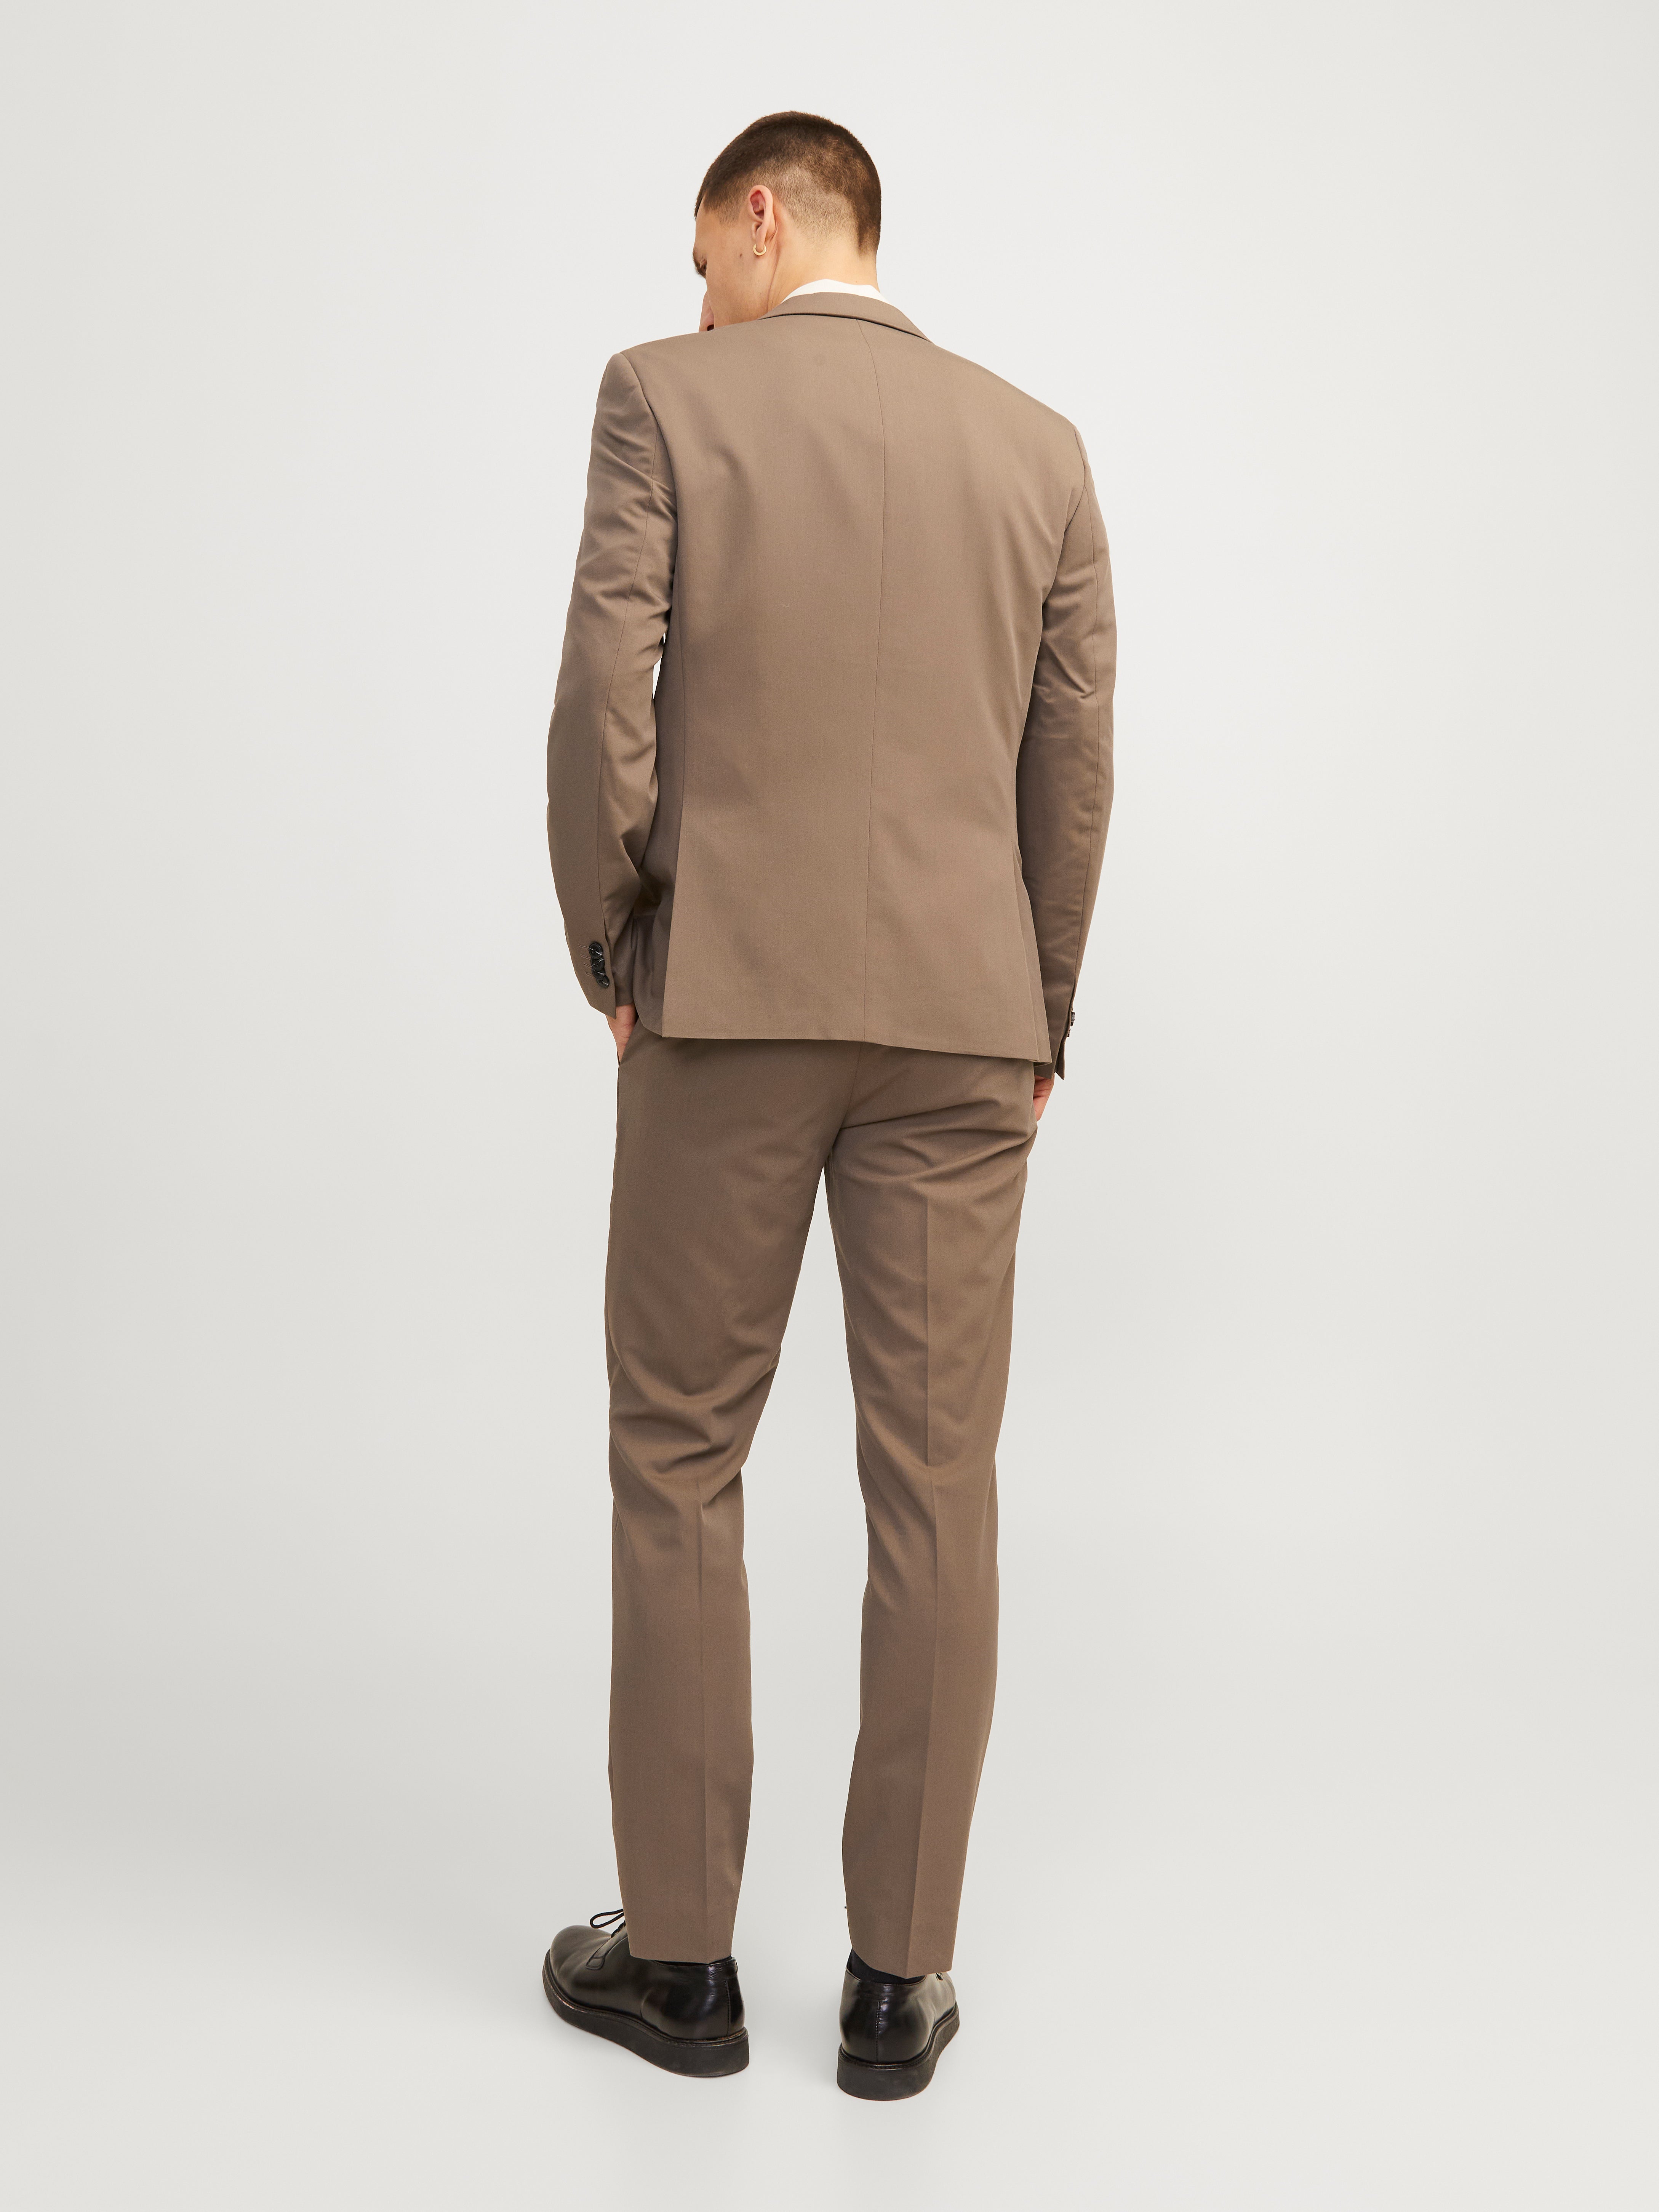 Flex Skinny Straight Fit Work Pants | Men's Pants | Dickies - Dickies US